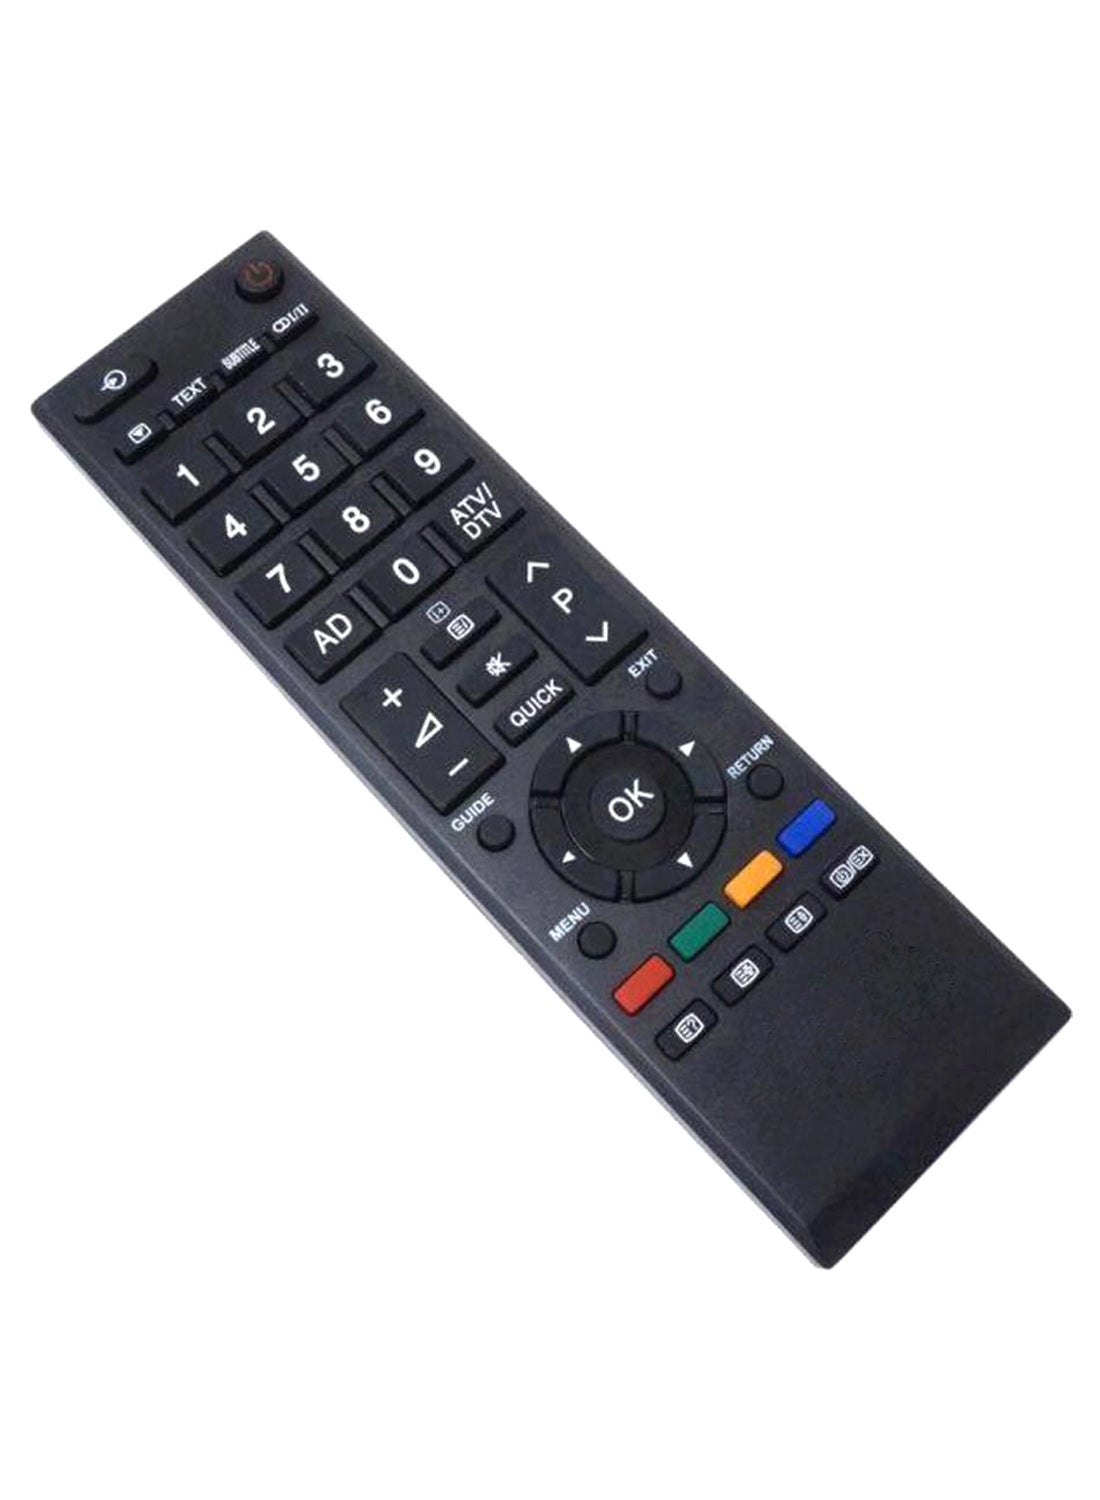 Remote Control for Toshiba TV - Black